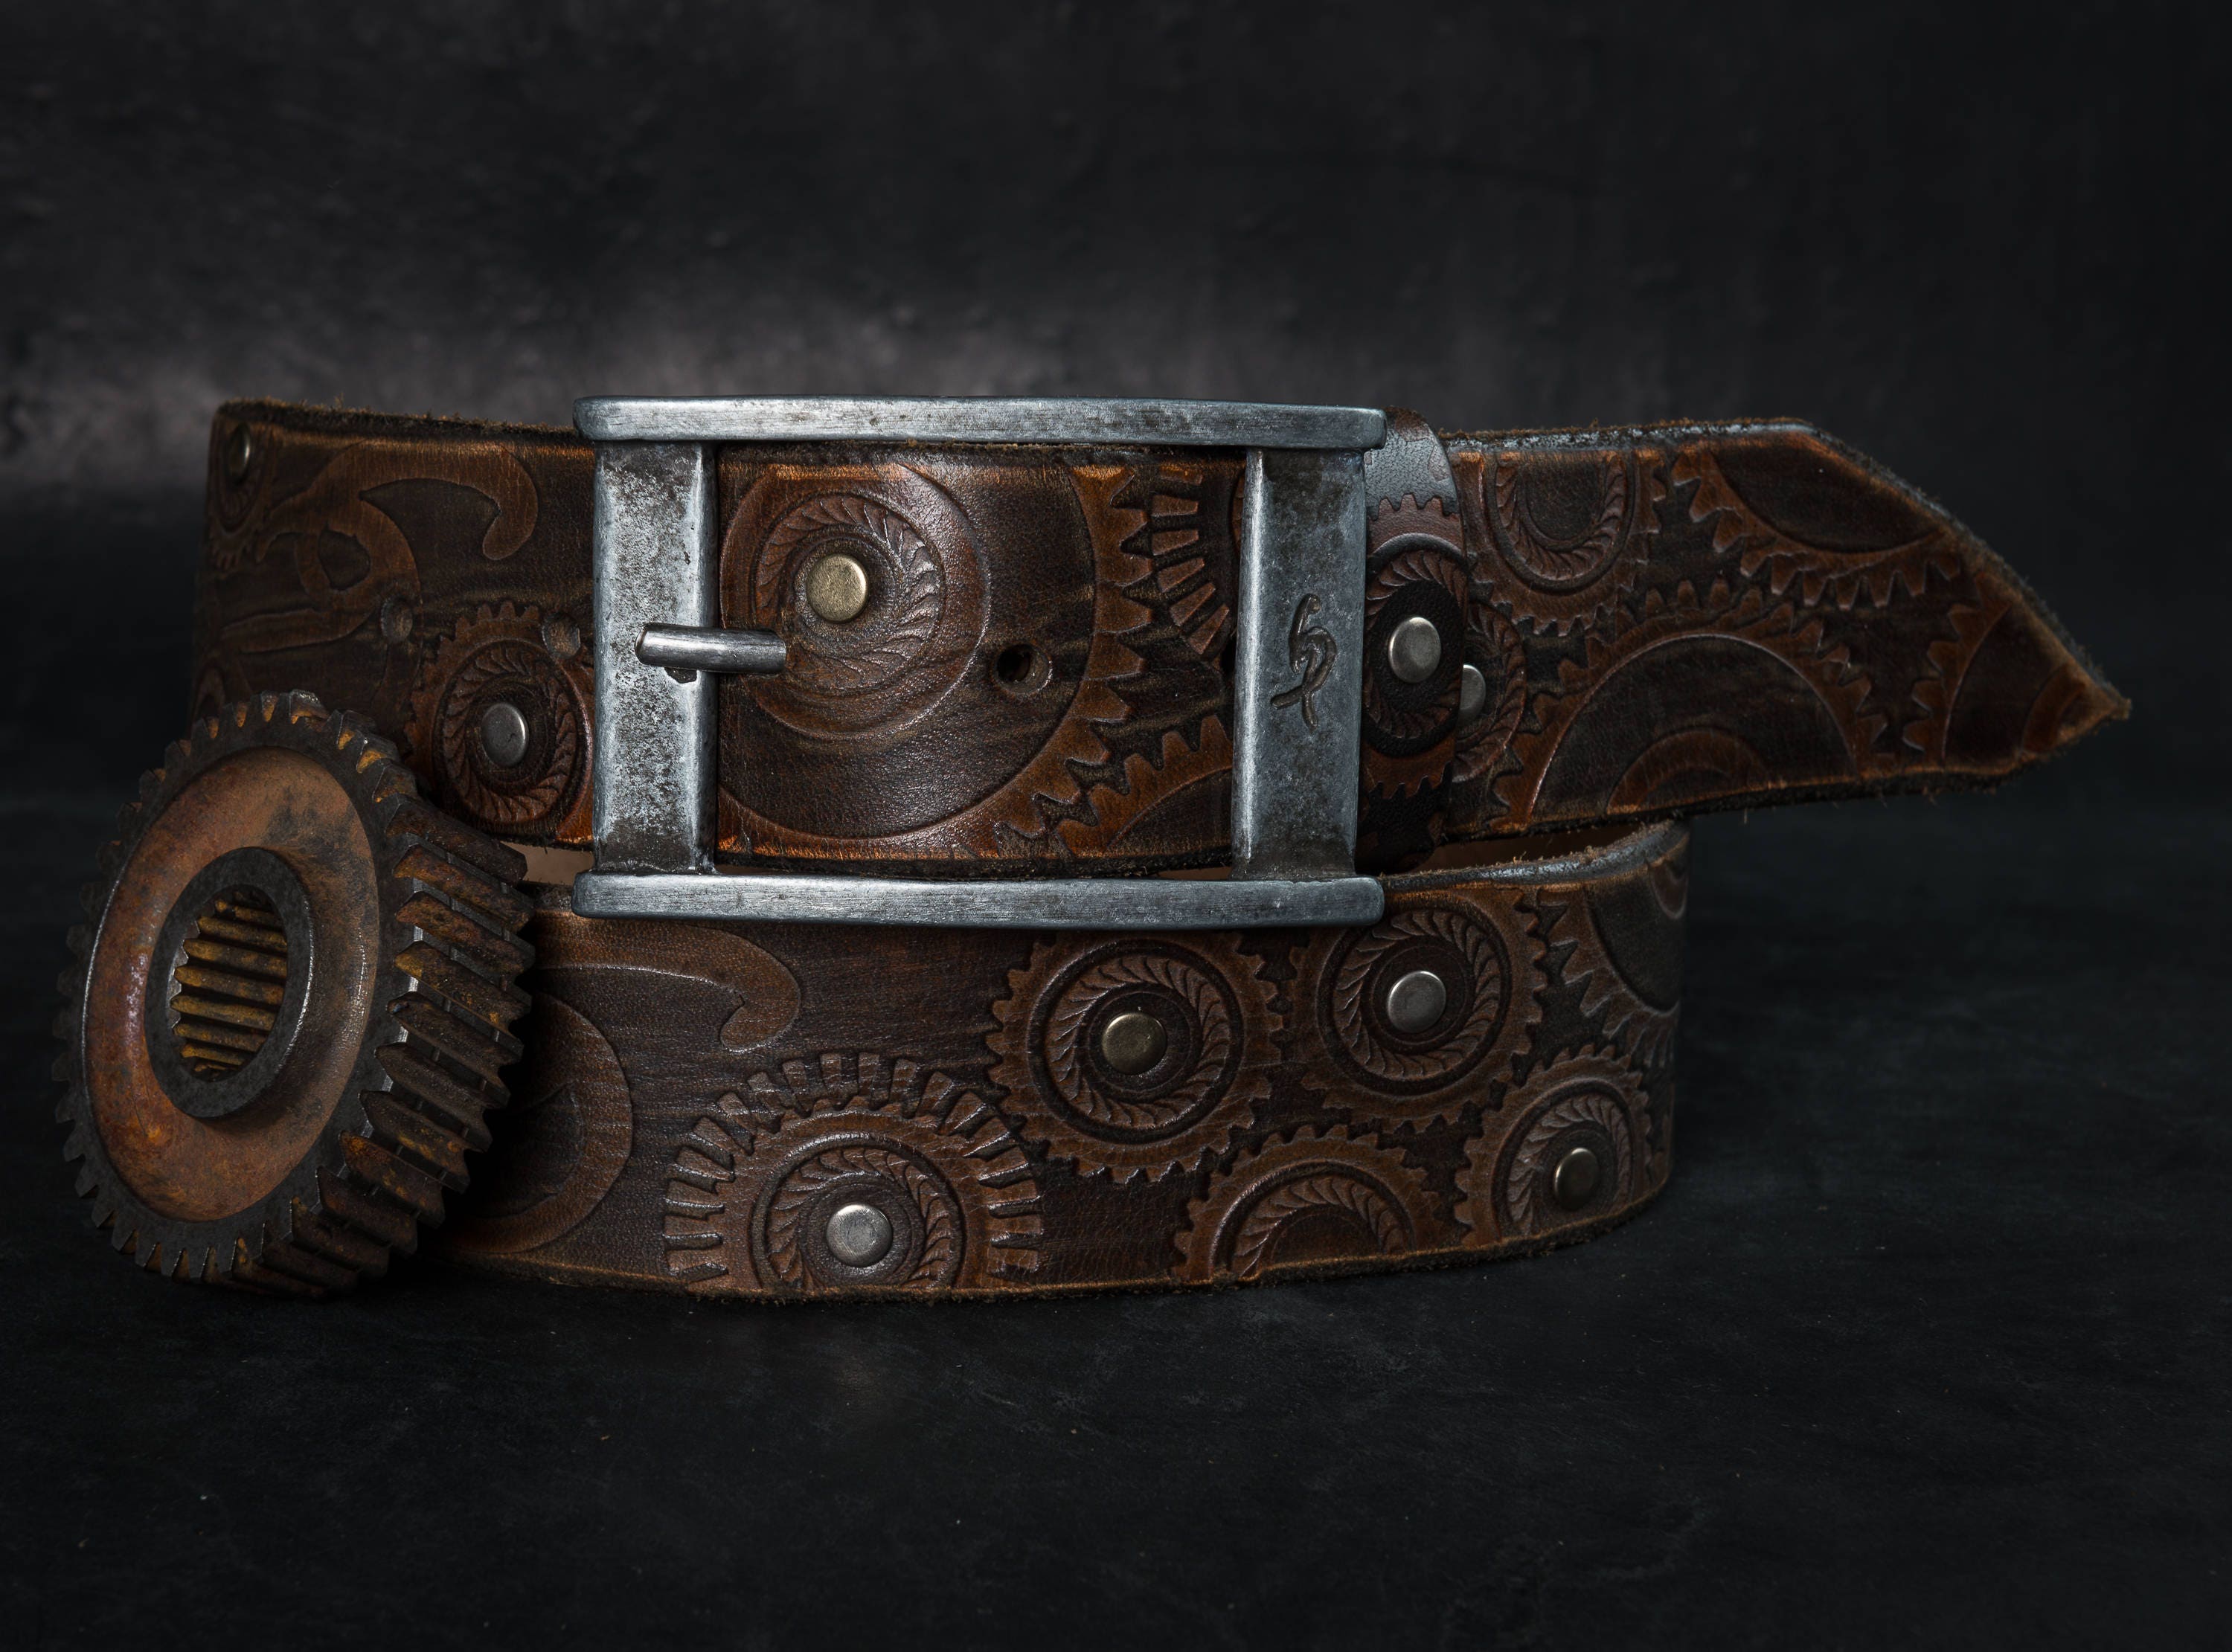 custom leather belt Brown leather belt leather buckle belt men's belt men's design biker accessories vintage  leather belt mens belt gift